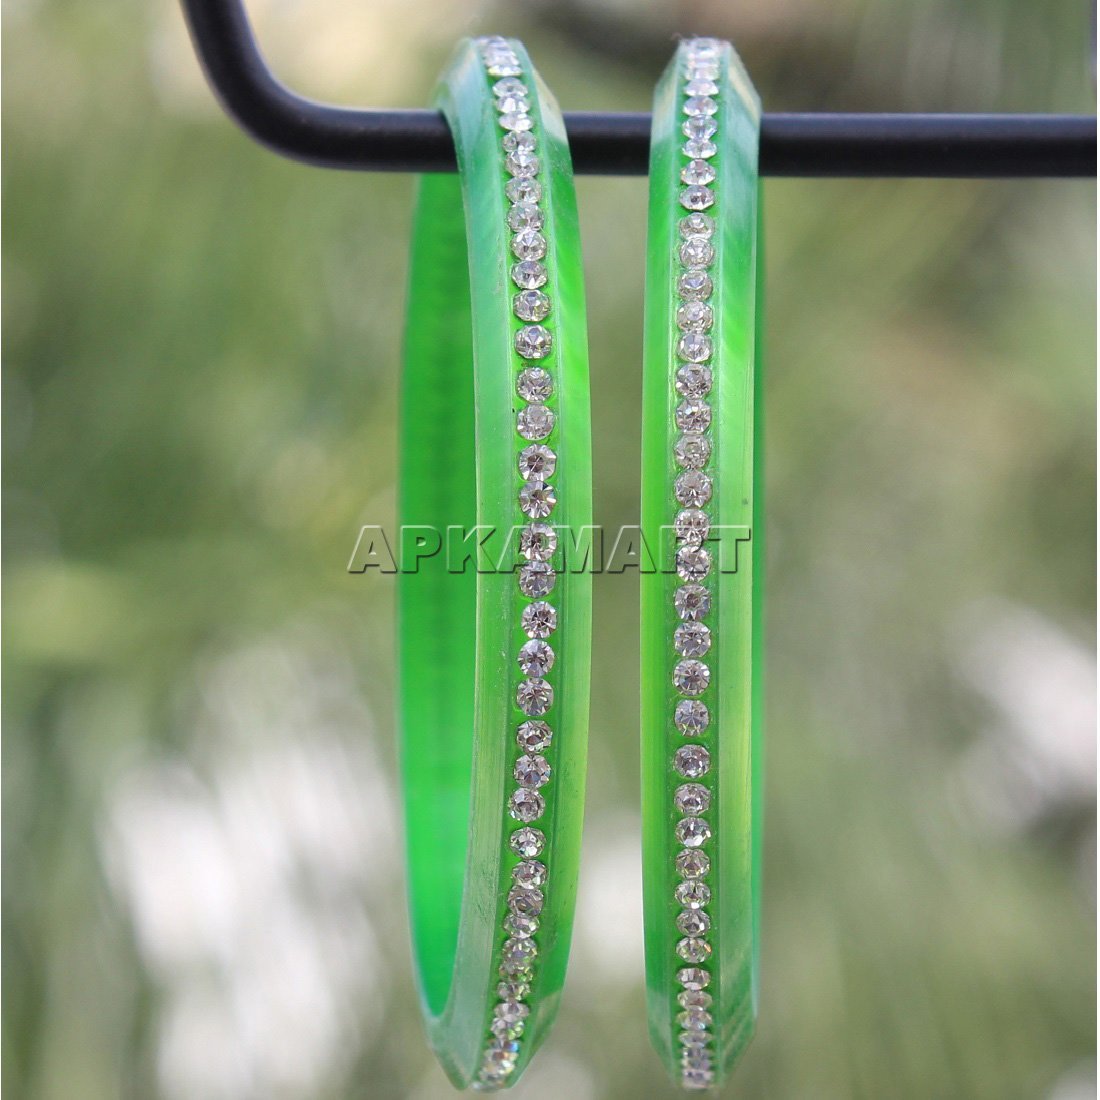 Green Beads Bangles - ApkaMart